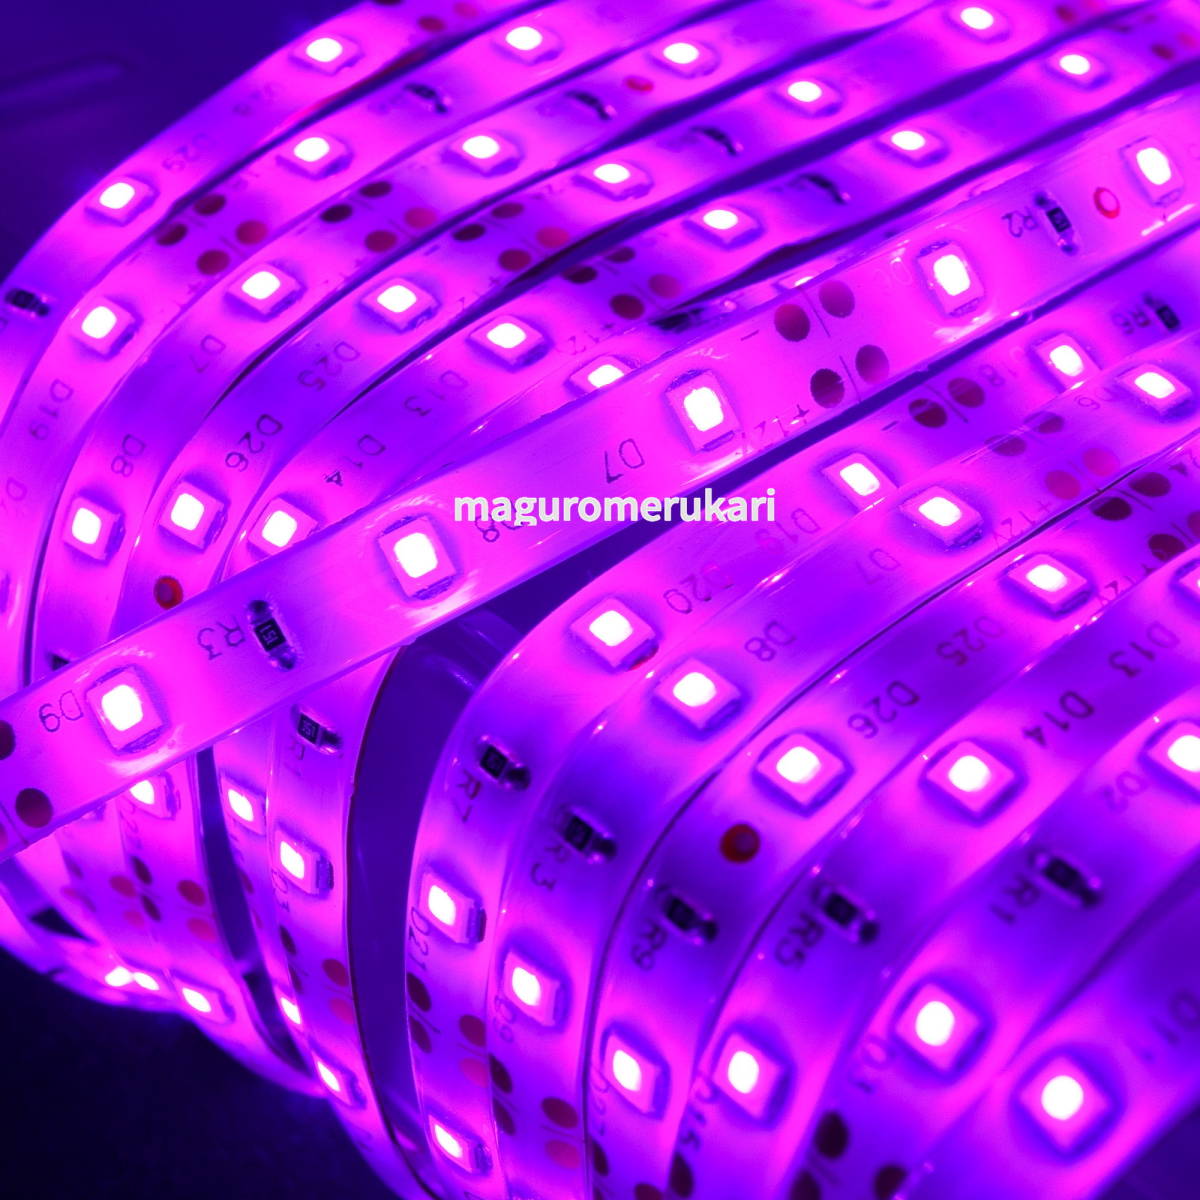  электропроводка легко!5mLED лента розовый лиловый ( фиолетовый ) одним движением коннектор 6 шт водонепроницаемый 12V машина мотоцикл мопед салон наружный интерьер непрямое освещение custom 